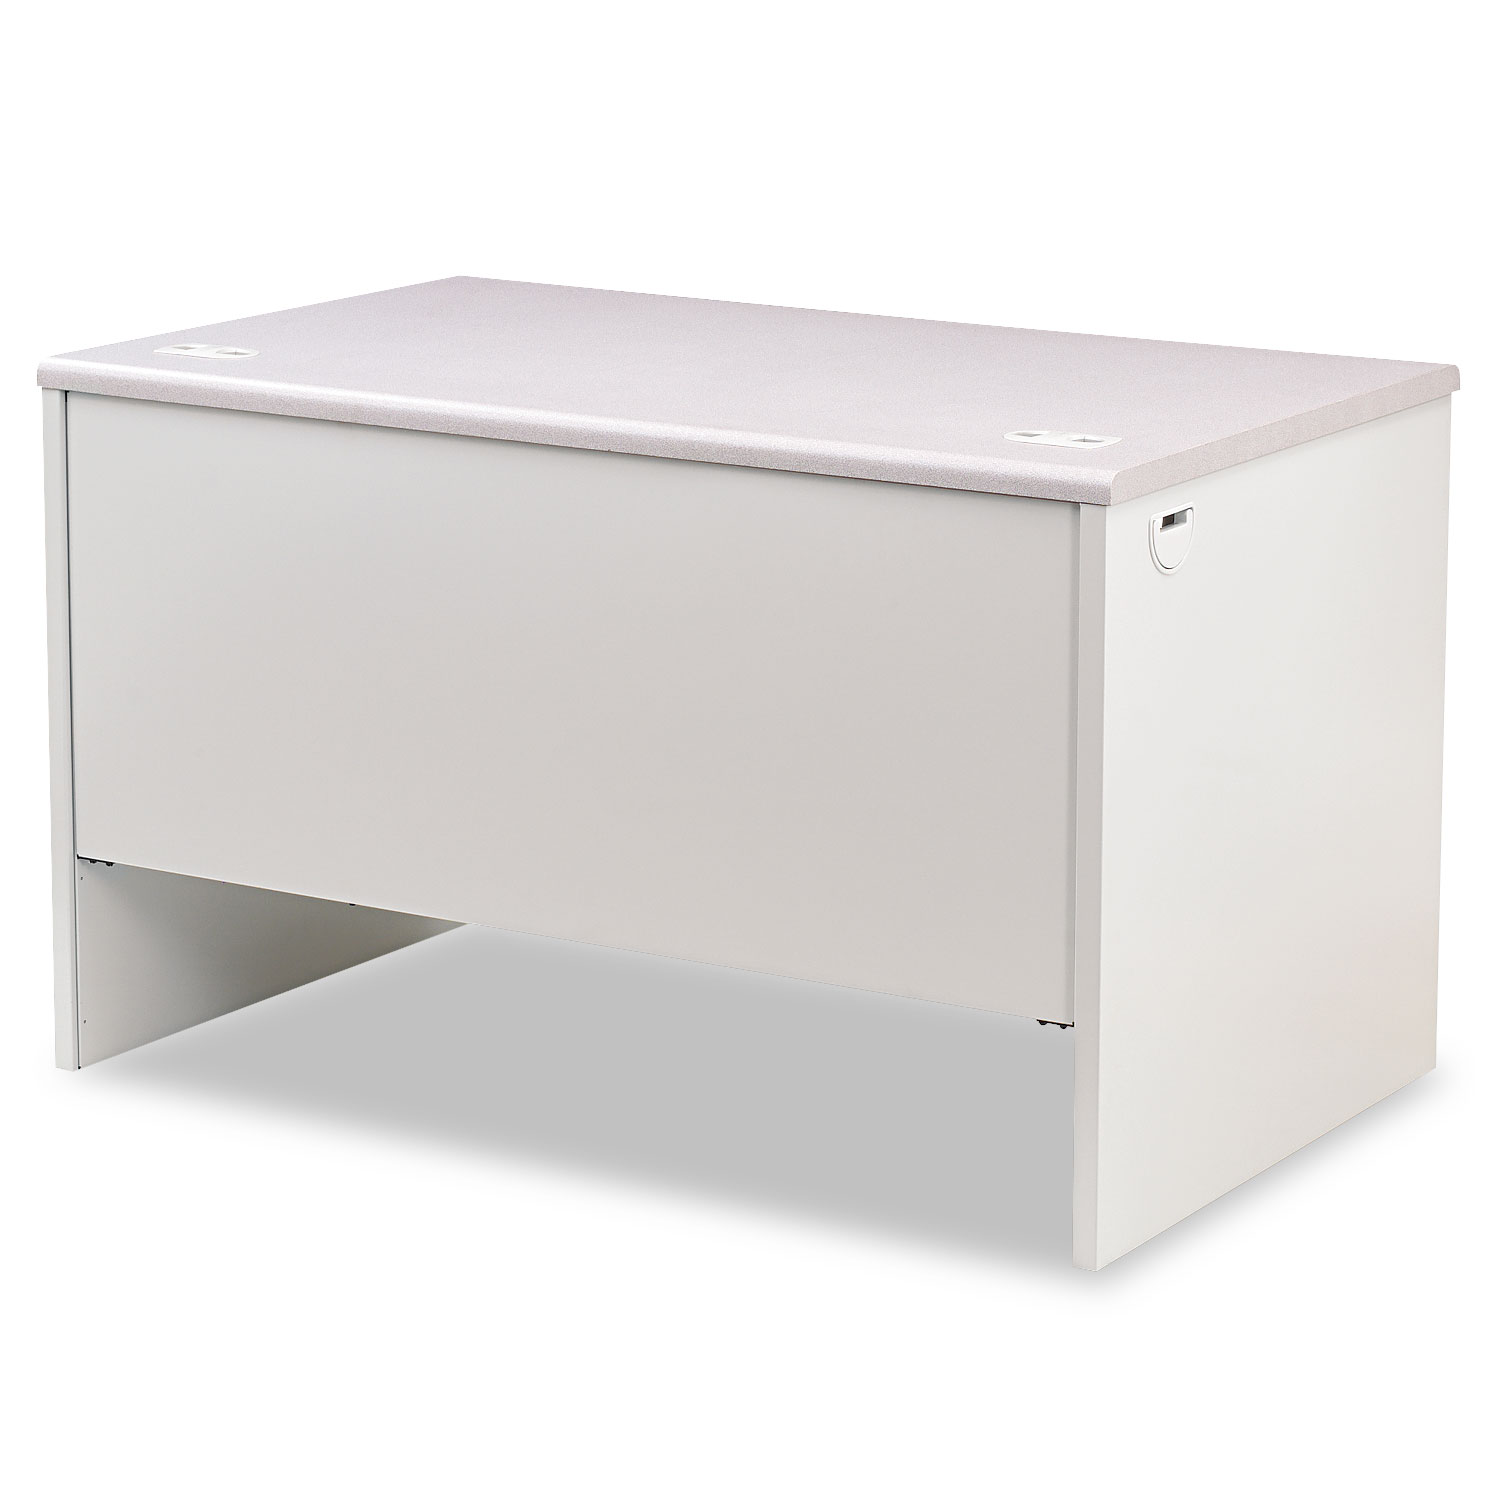 38000 Series Right Pedestal Desk, 48w x 30d x 29-1/2h, Light Gray